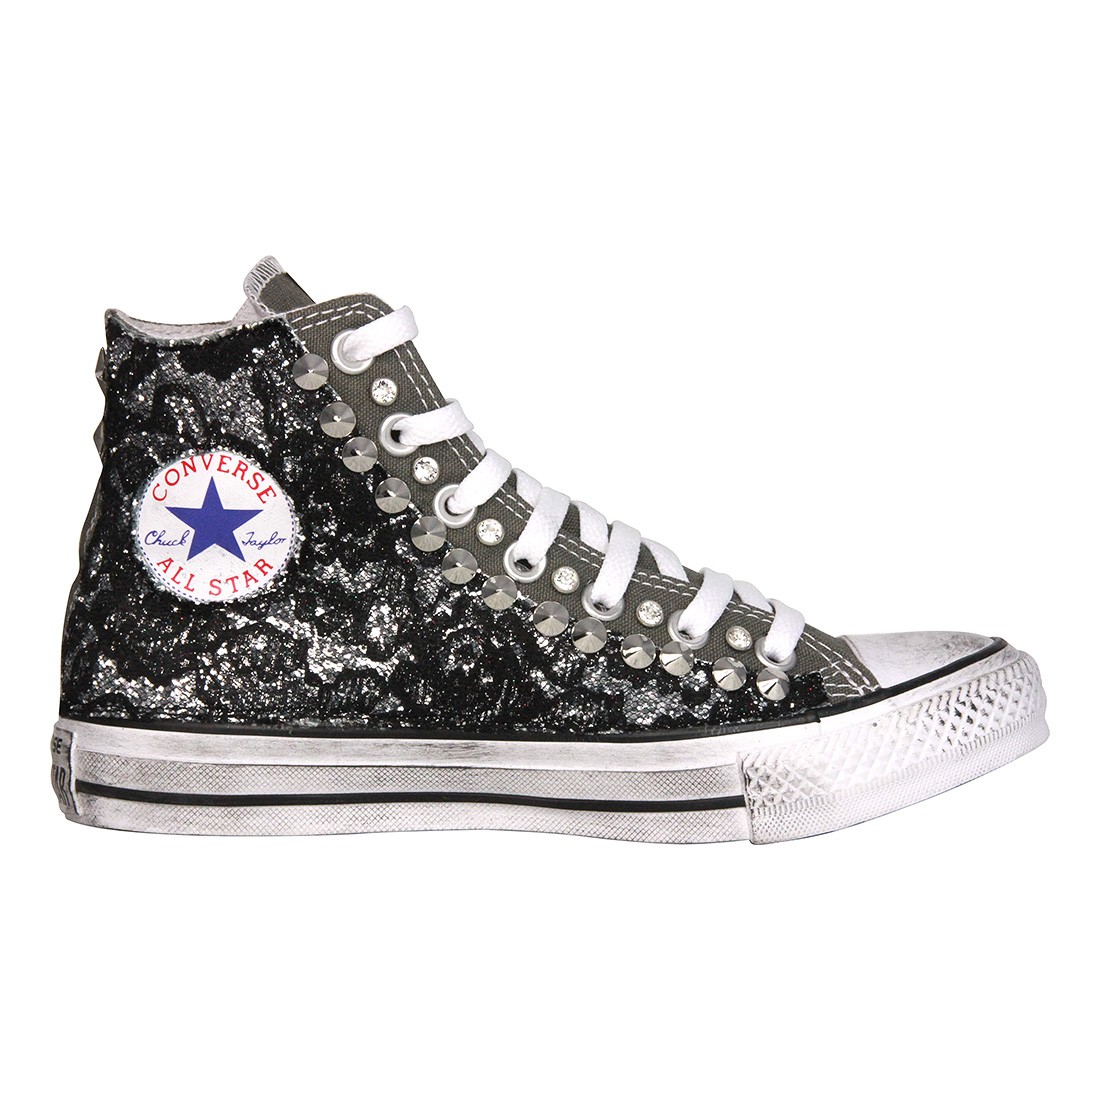 108 Store Viareggio: All Star e sneakers decorate con glitter e borchie -  Shoeplay Fashion blog di scarpe da donna